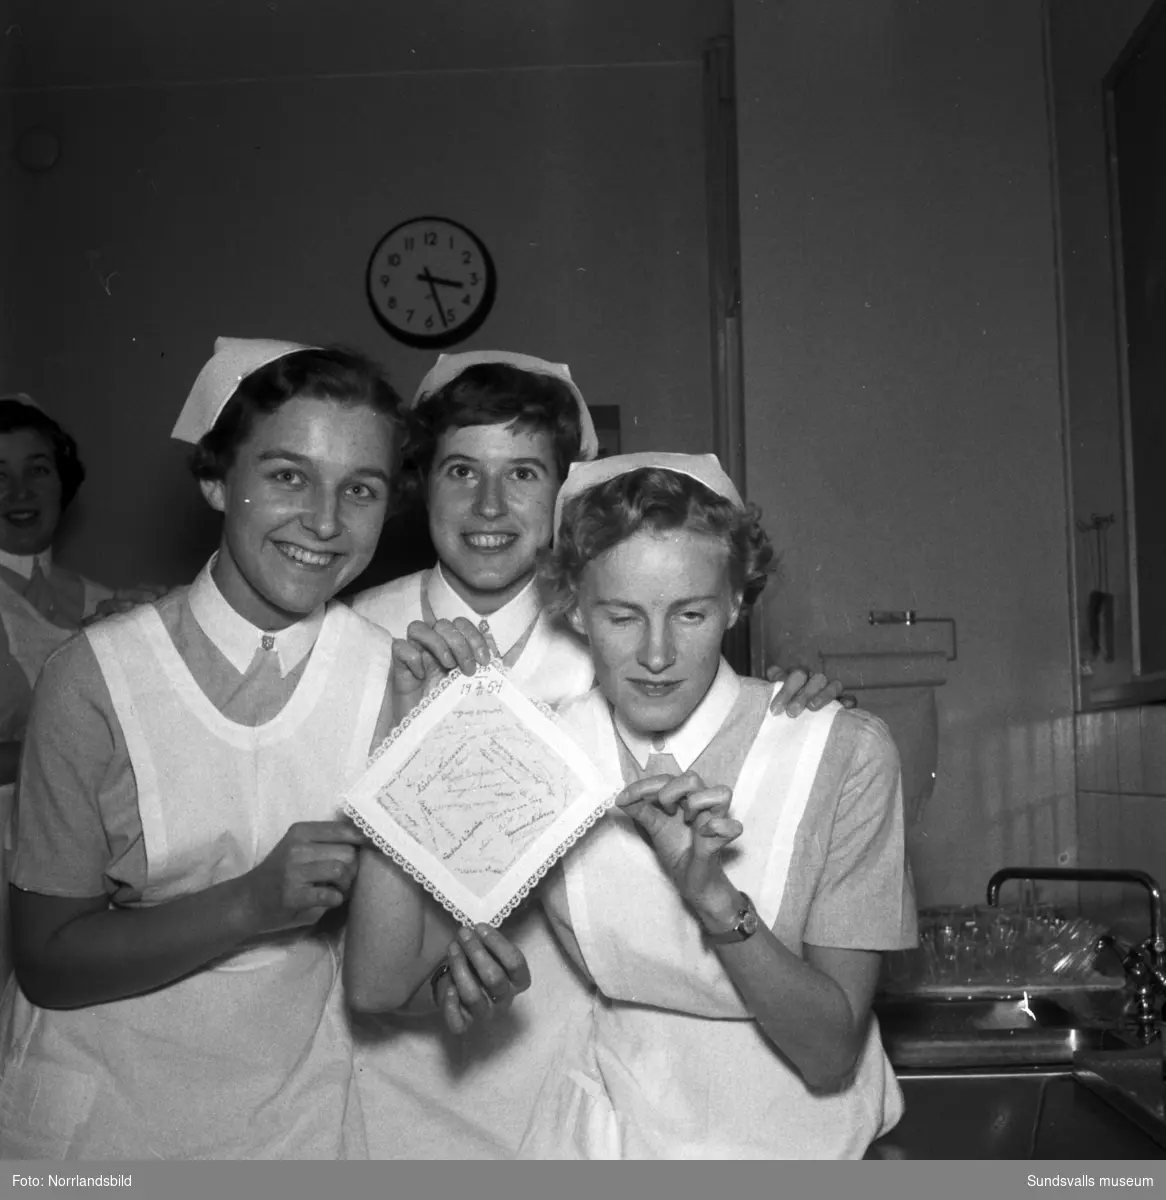 Kursavslutning på sjuksköterskeskolan i Sundsvall 1954.